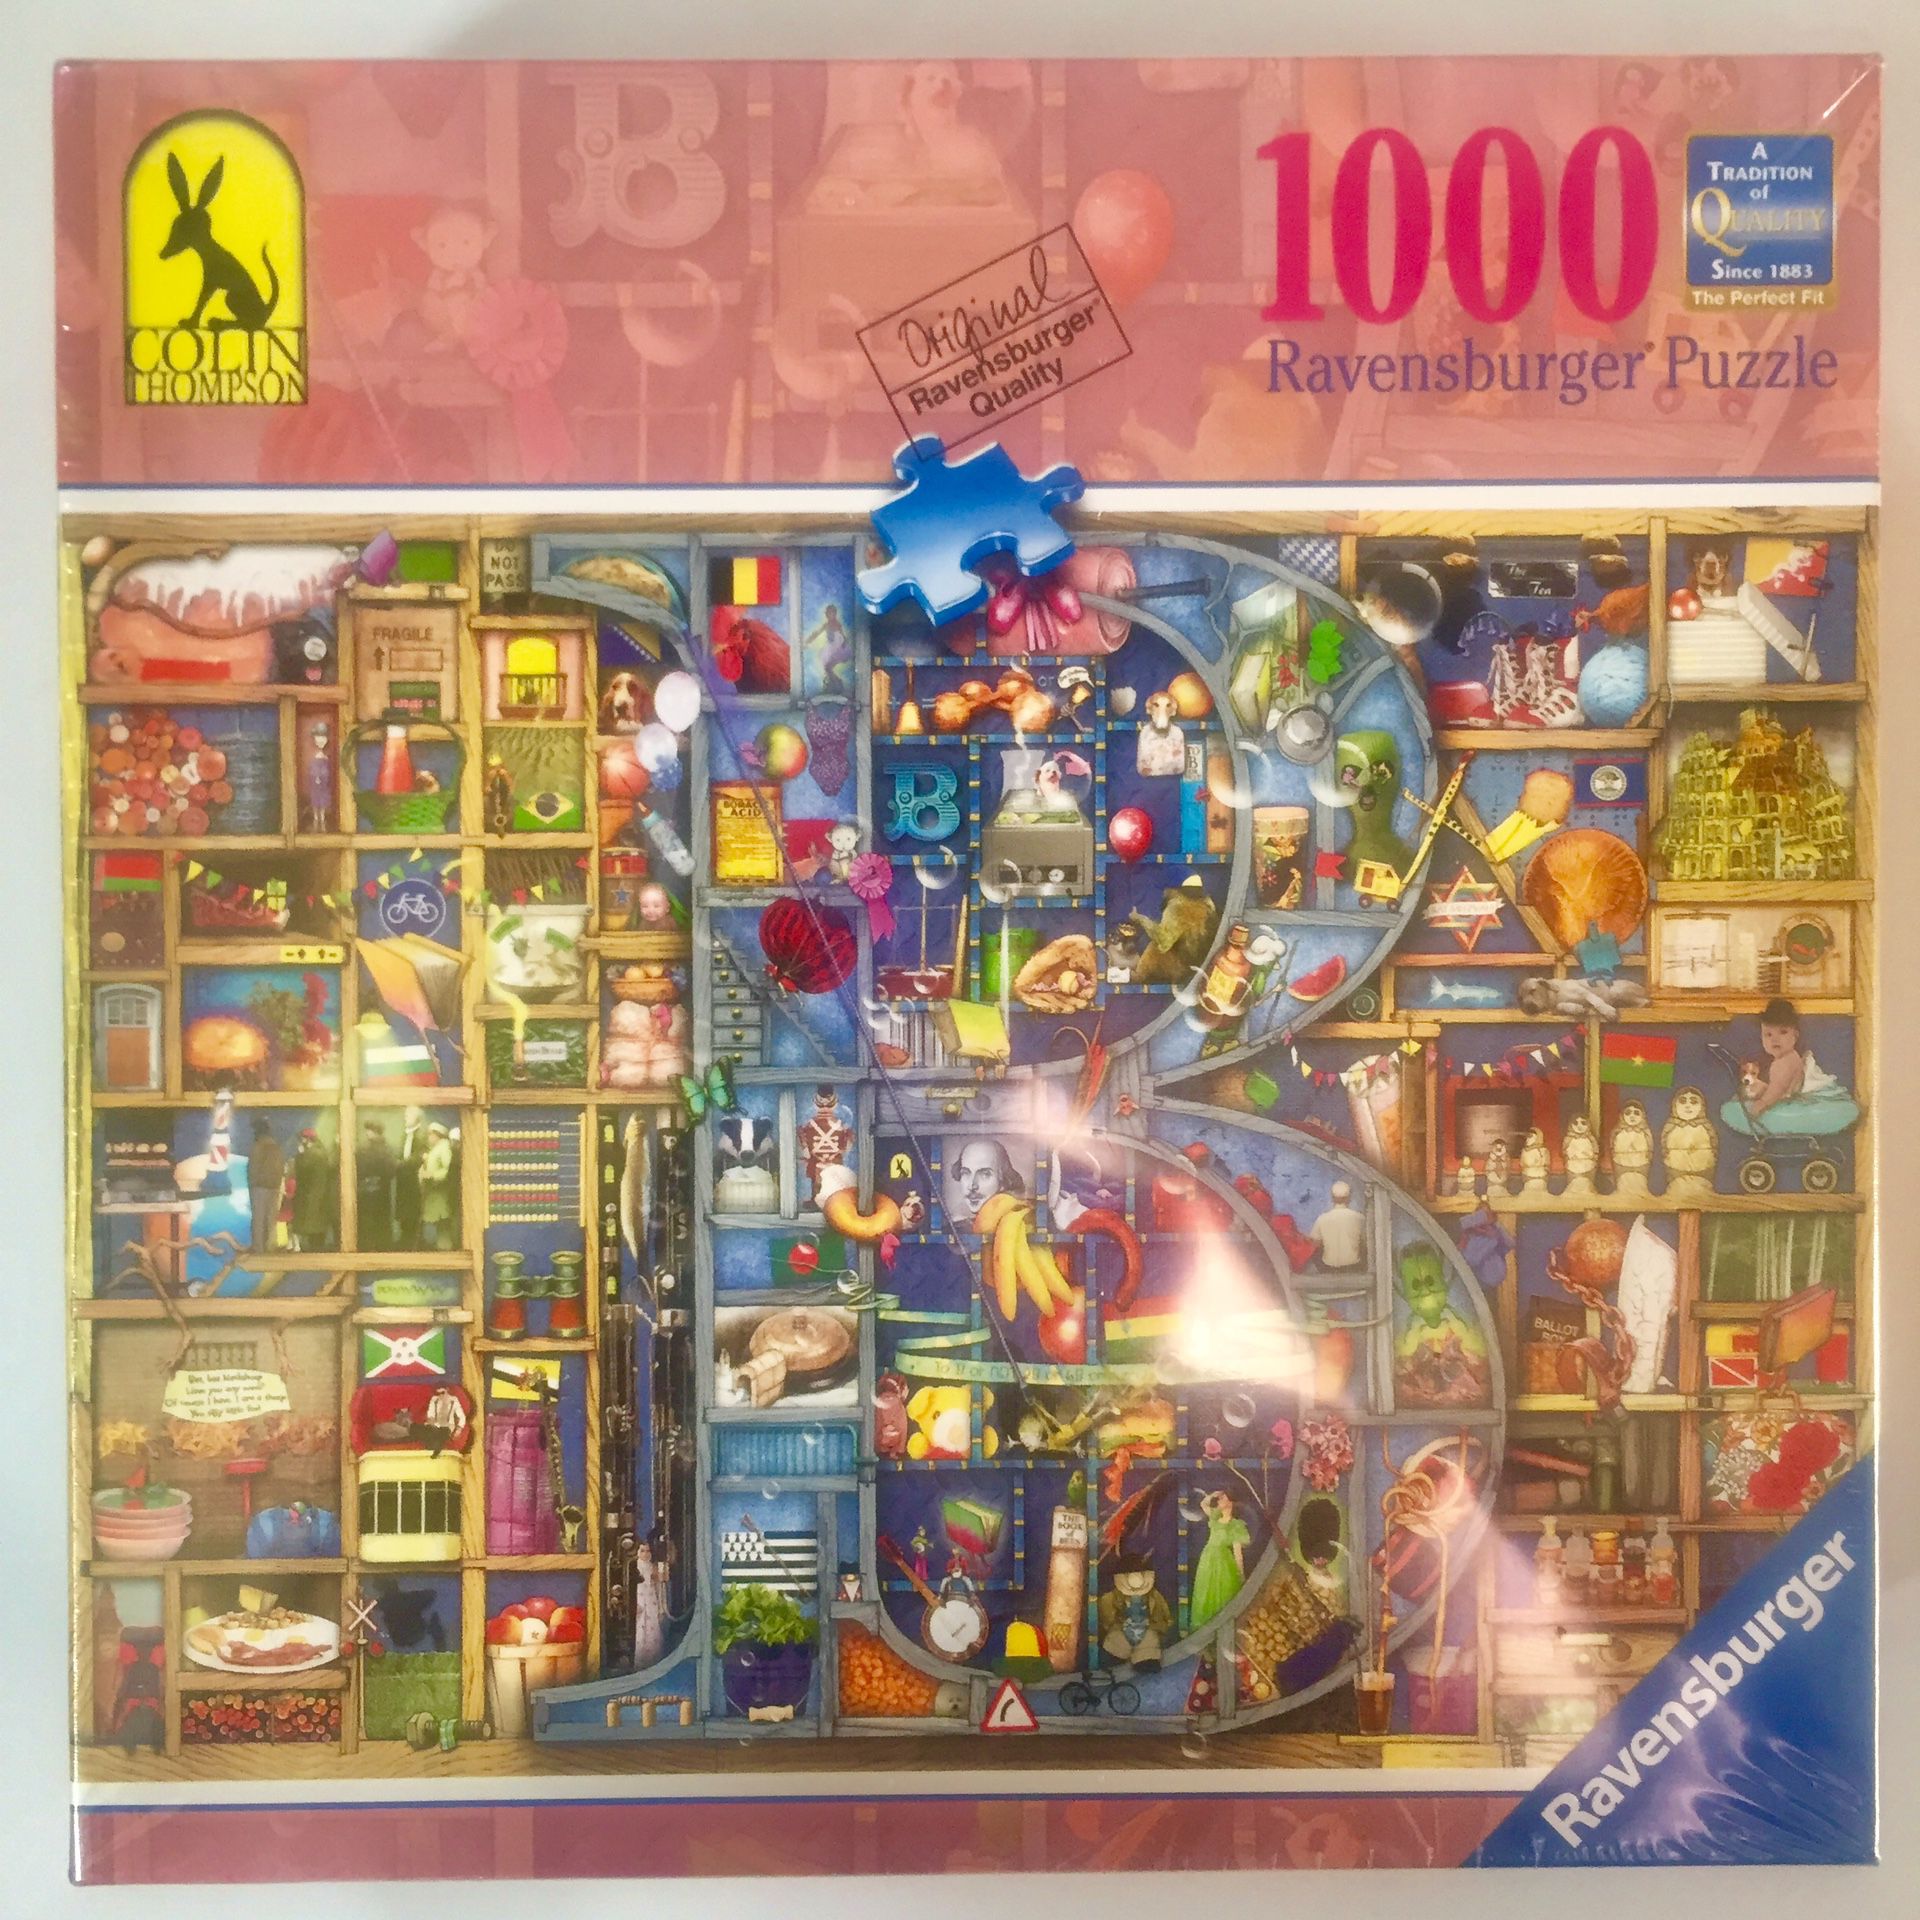 Ravensburger 1000 Piece Puzzle (no. 82 463 2)